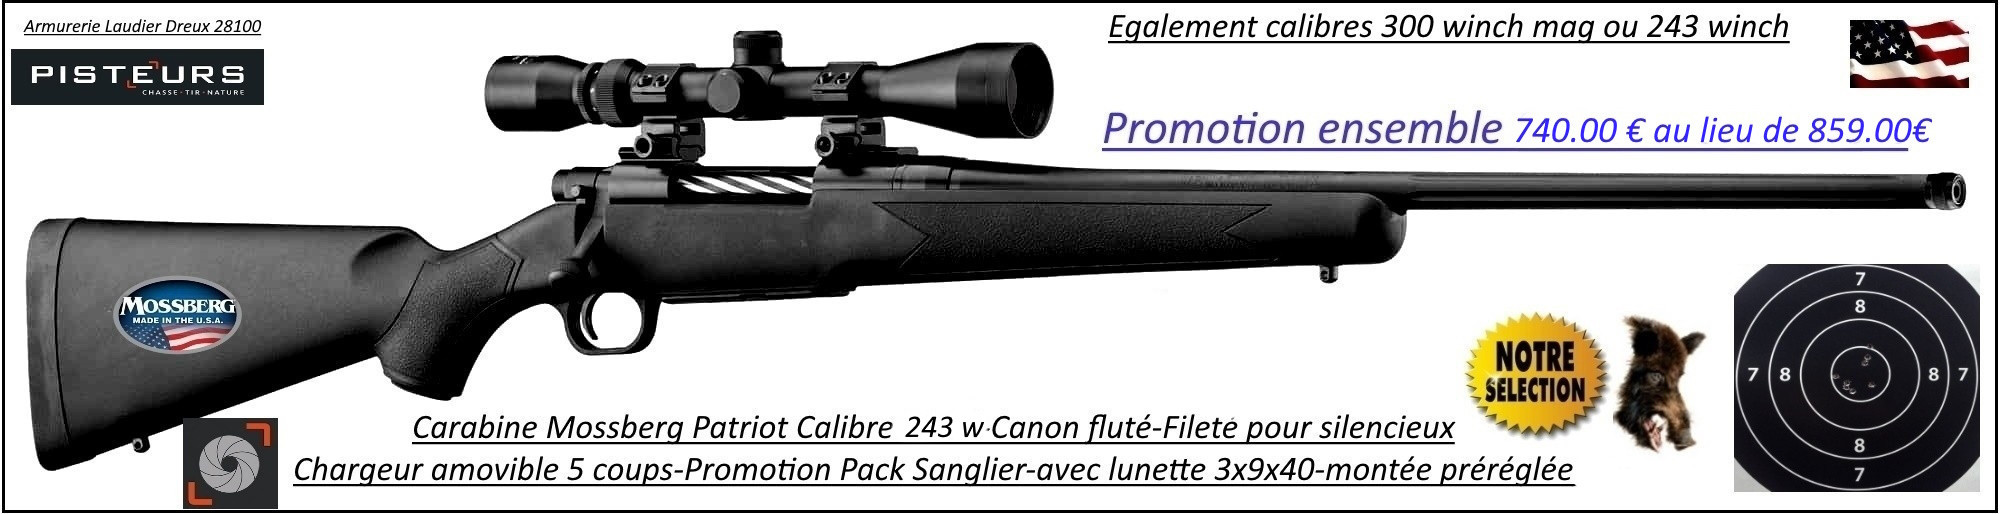 Carabine Mossberg Patriot Calibre 243 winch Répétition Pack  sanglier-complet-Lunette -3x9x40 Canon-FILETE-POUR-SILENCIEUX -Promotion-740 € ttc au lieu de 859 € ttc-Ref PCKMO2430F-ea